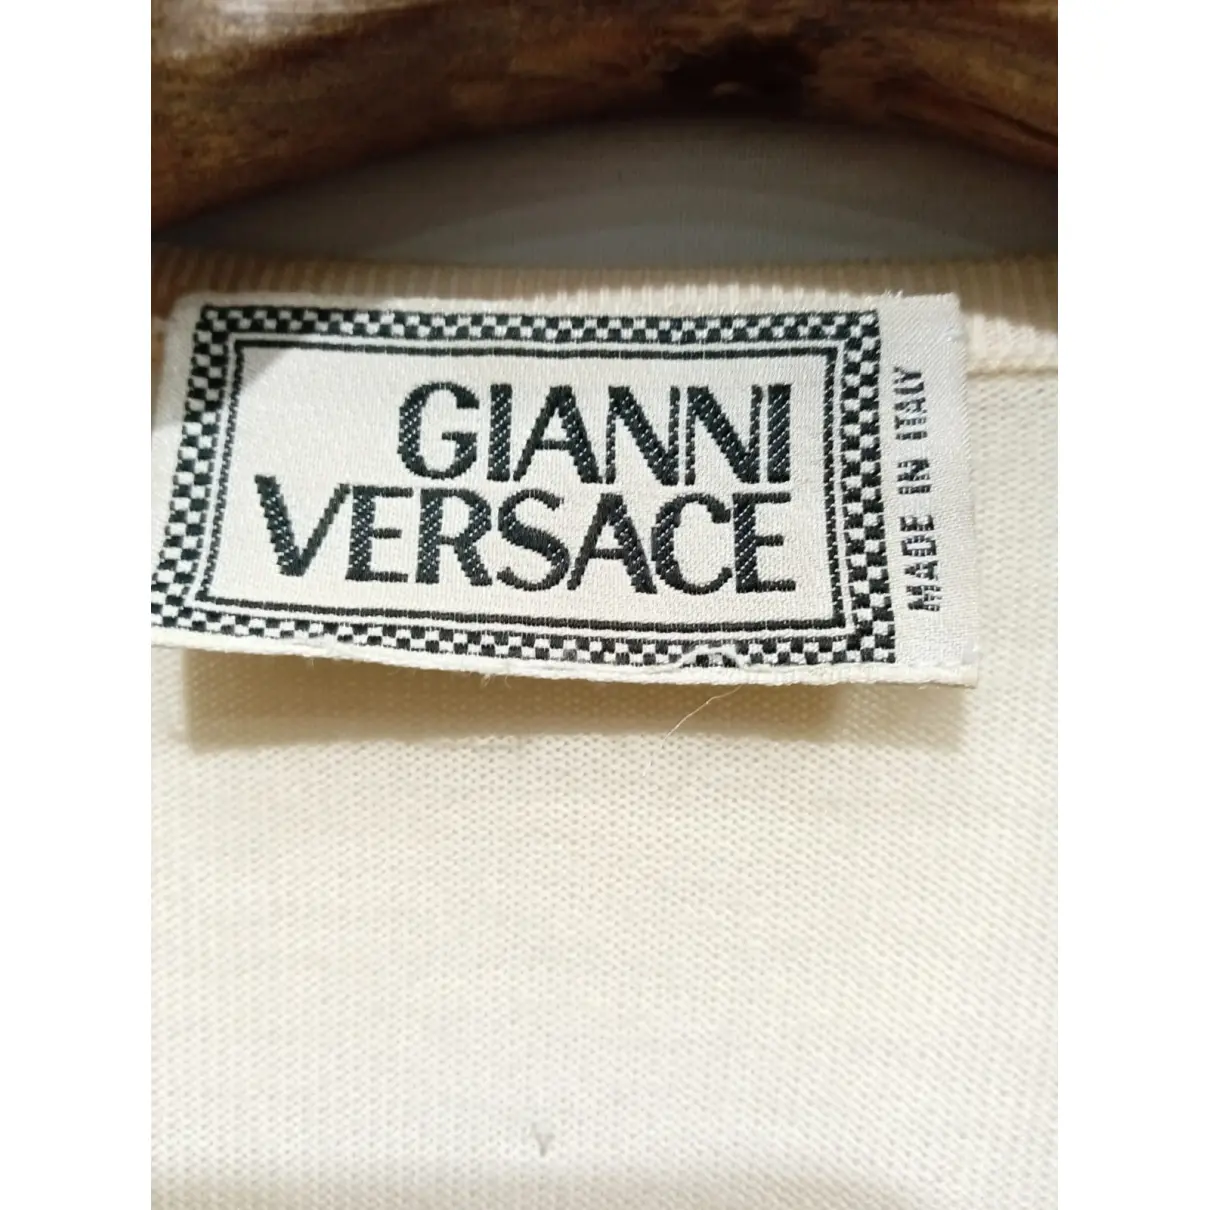 Luxury Gianni Versace Knitwear Women - Vintage